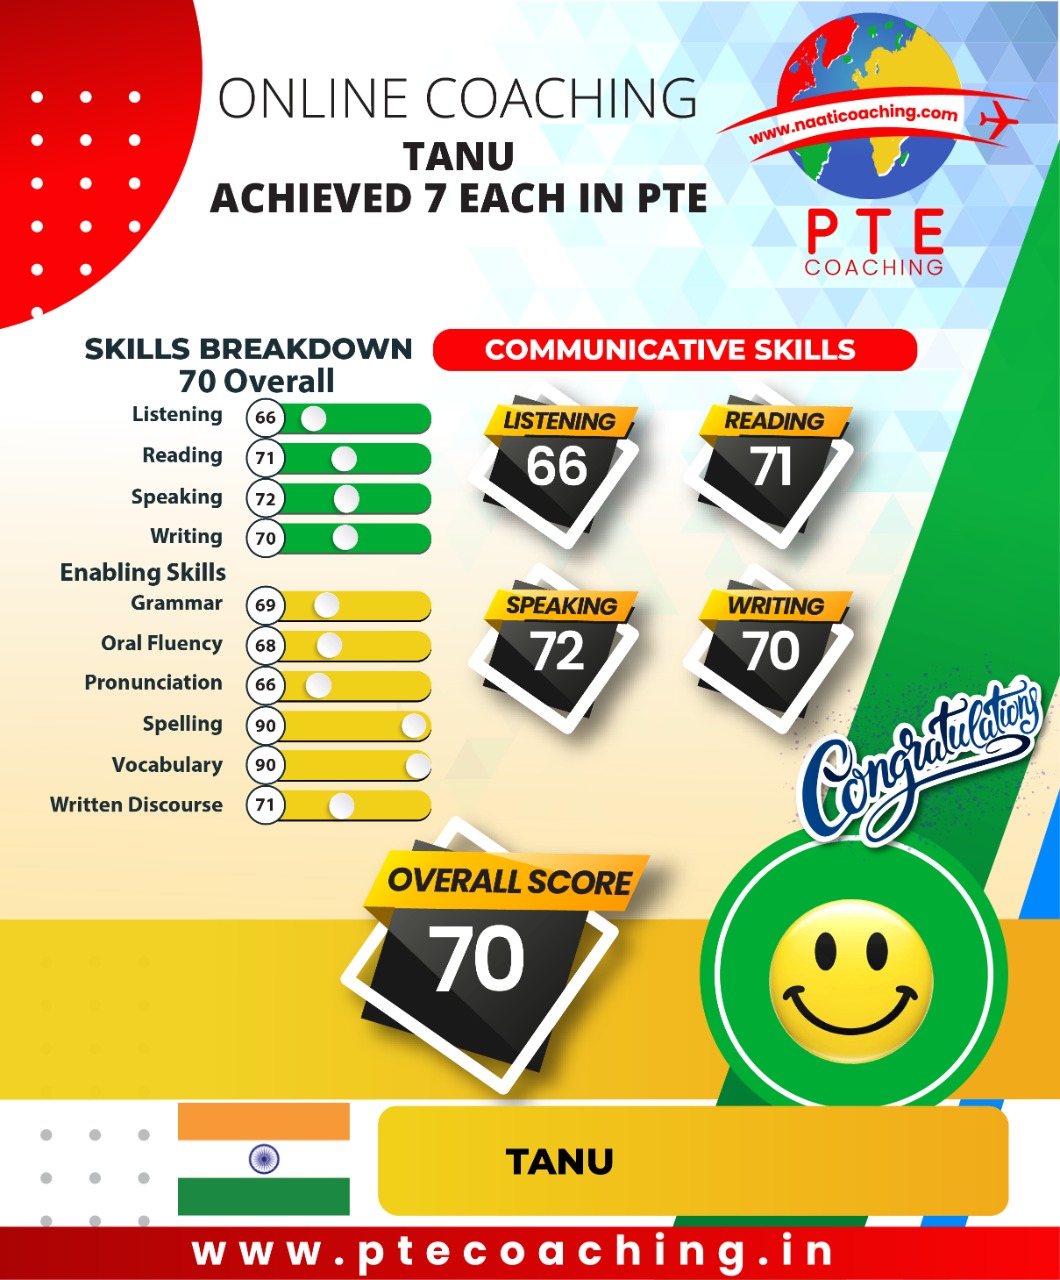 PTE Coaching Scorecard - Tanu achieved 7 each in PTE